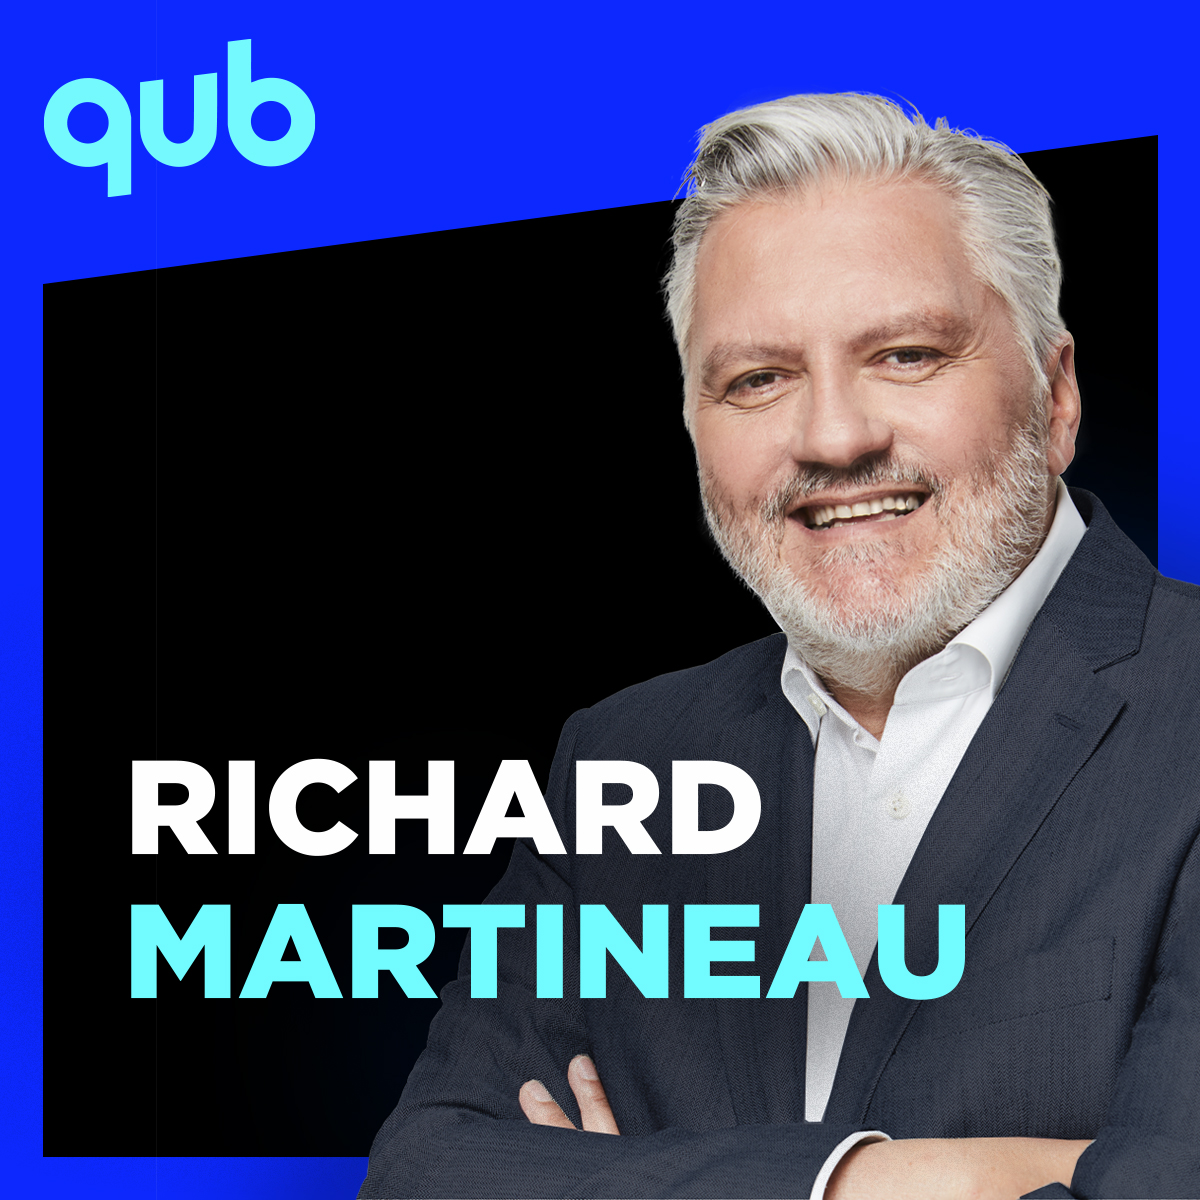 Richard est maintenant président de la Fédération des coucous du Québec